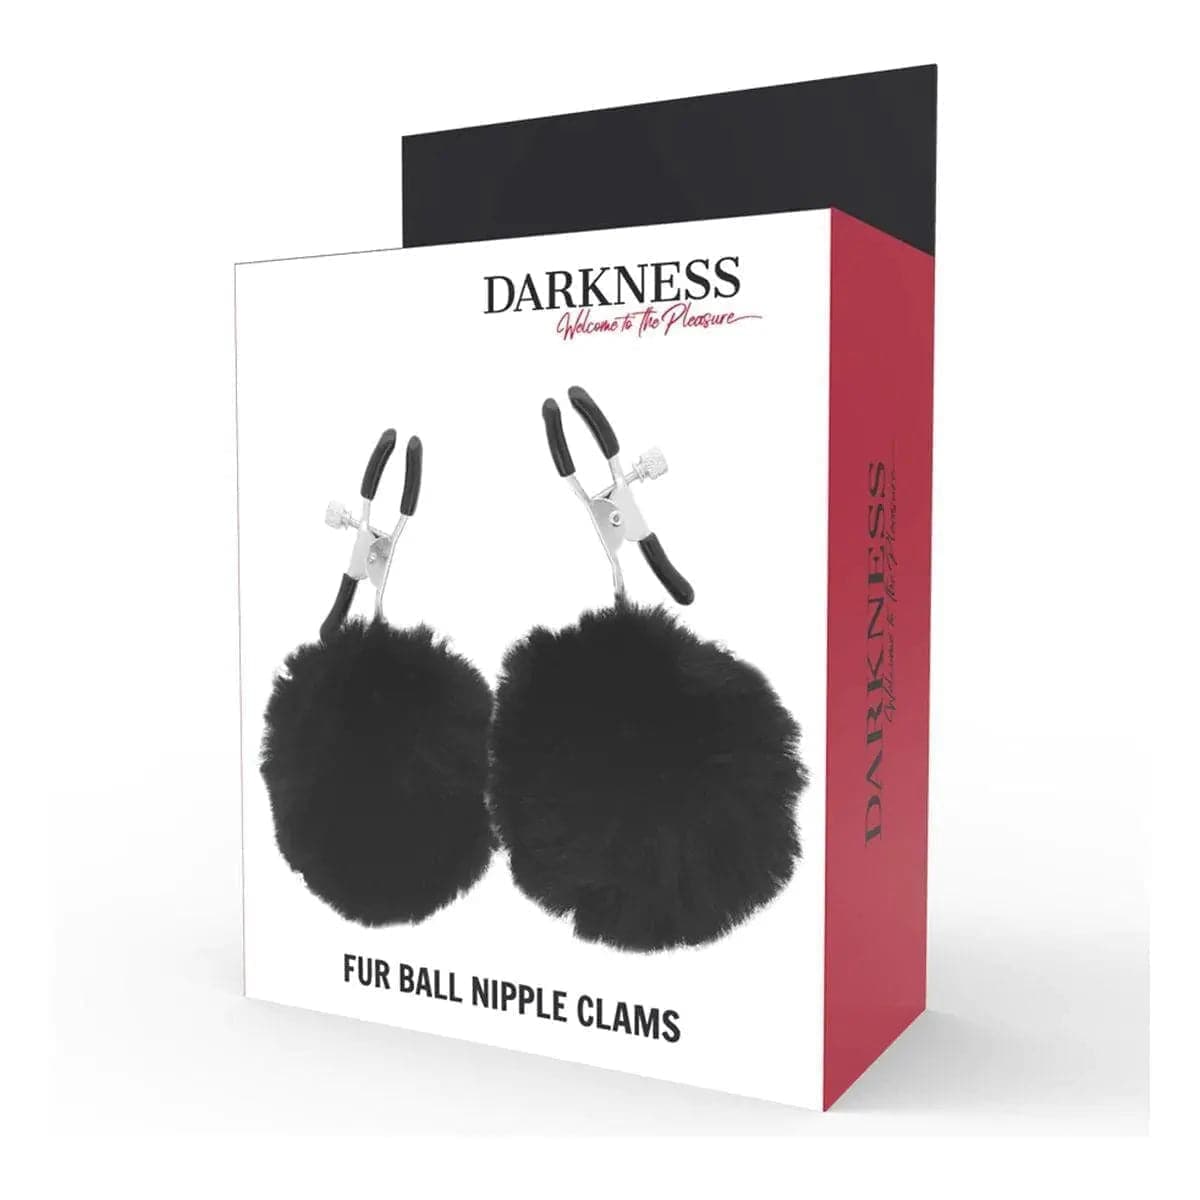 Pinças Darkness Fur Ball Nipple Clams  Darkness   